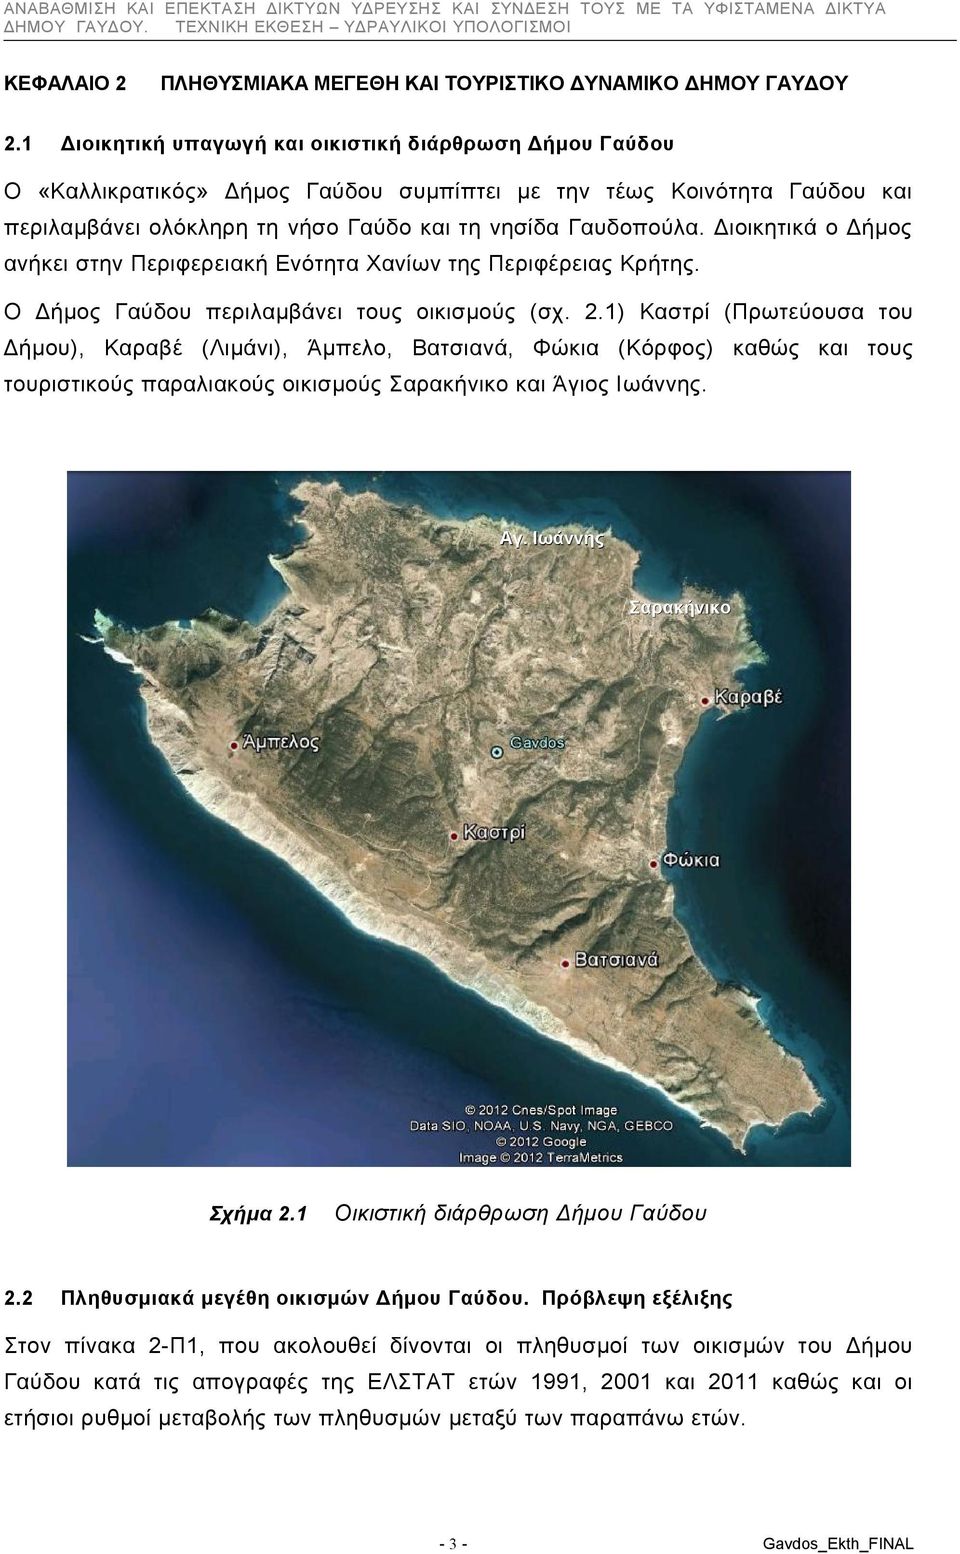 περιλαμβάνει ολόκληρη τη νήσο Γαύδο και τη νησίδα Γαυδοπούλα. Διοικητικά ο Δήμος ανήκει στην Περιφερειακή Ενότητα Χανίων της Περιφέρειας Κρήτης. Ο Δήμος Γαύδου περιλαμβάνει τους οικισμούς (σχ. 2.